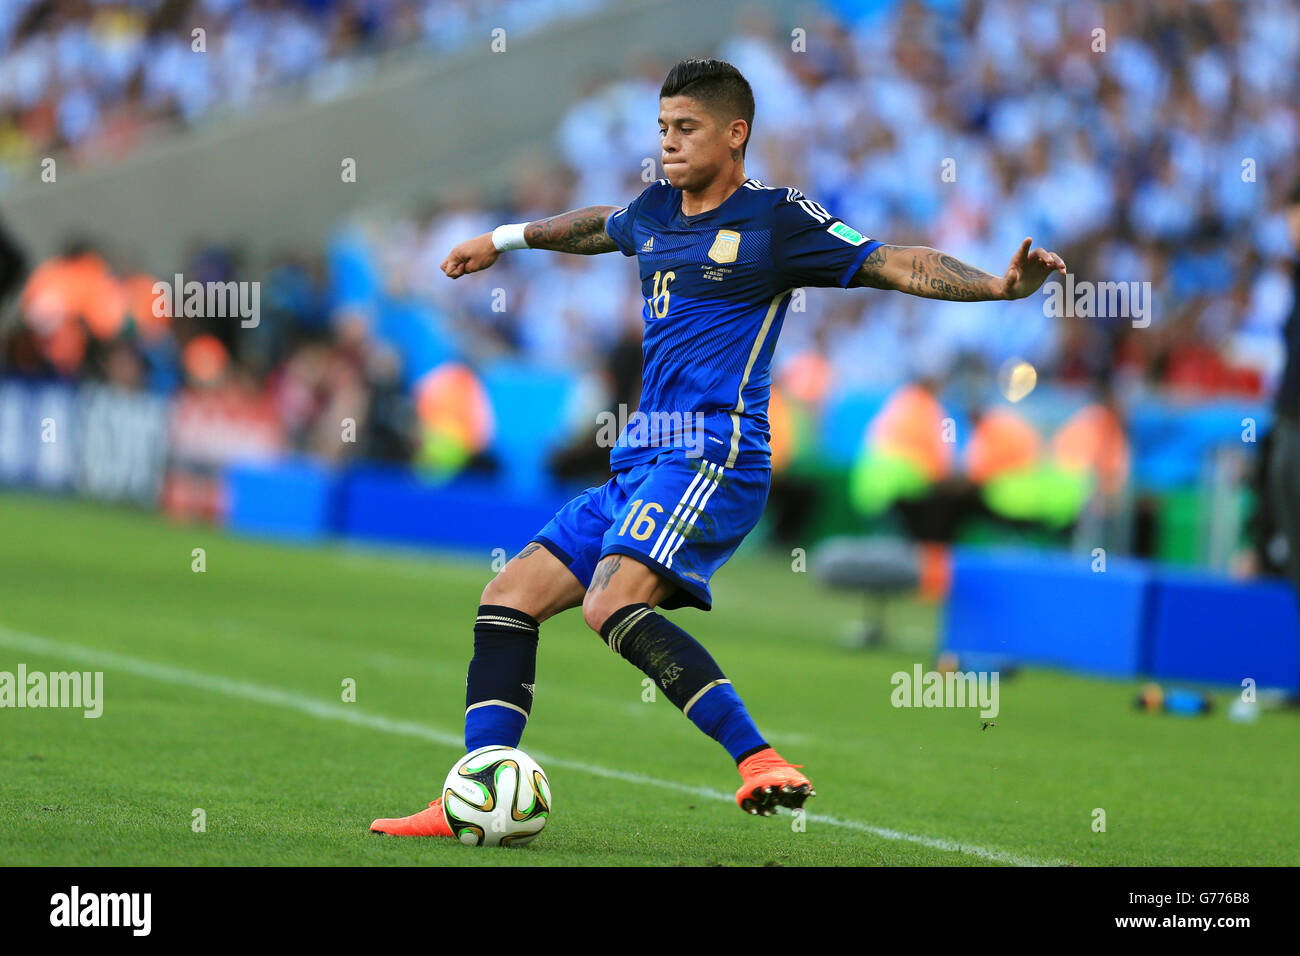 Soccer - FIFA World Cup 2014 - Final - Germany v Argentina - Estadio do Maracana. Argentina's Marcos Rojo Stock Photo